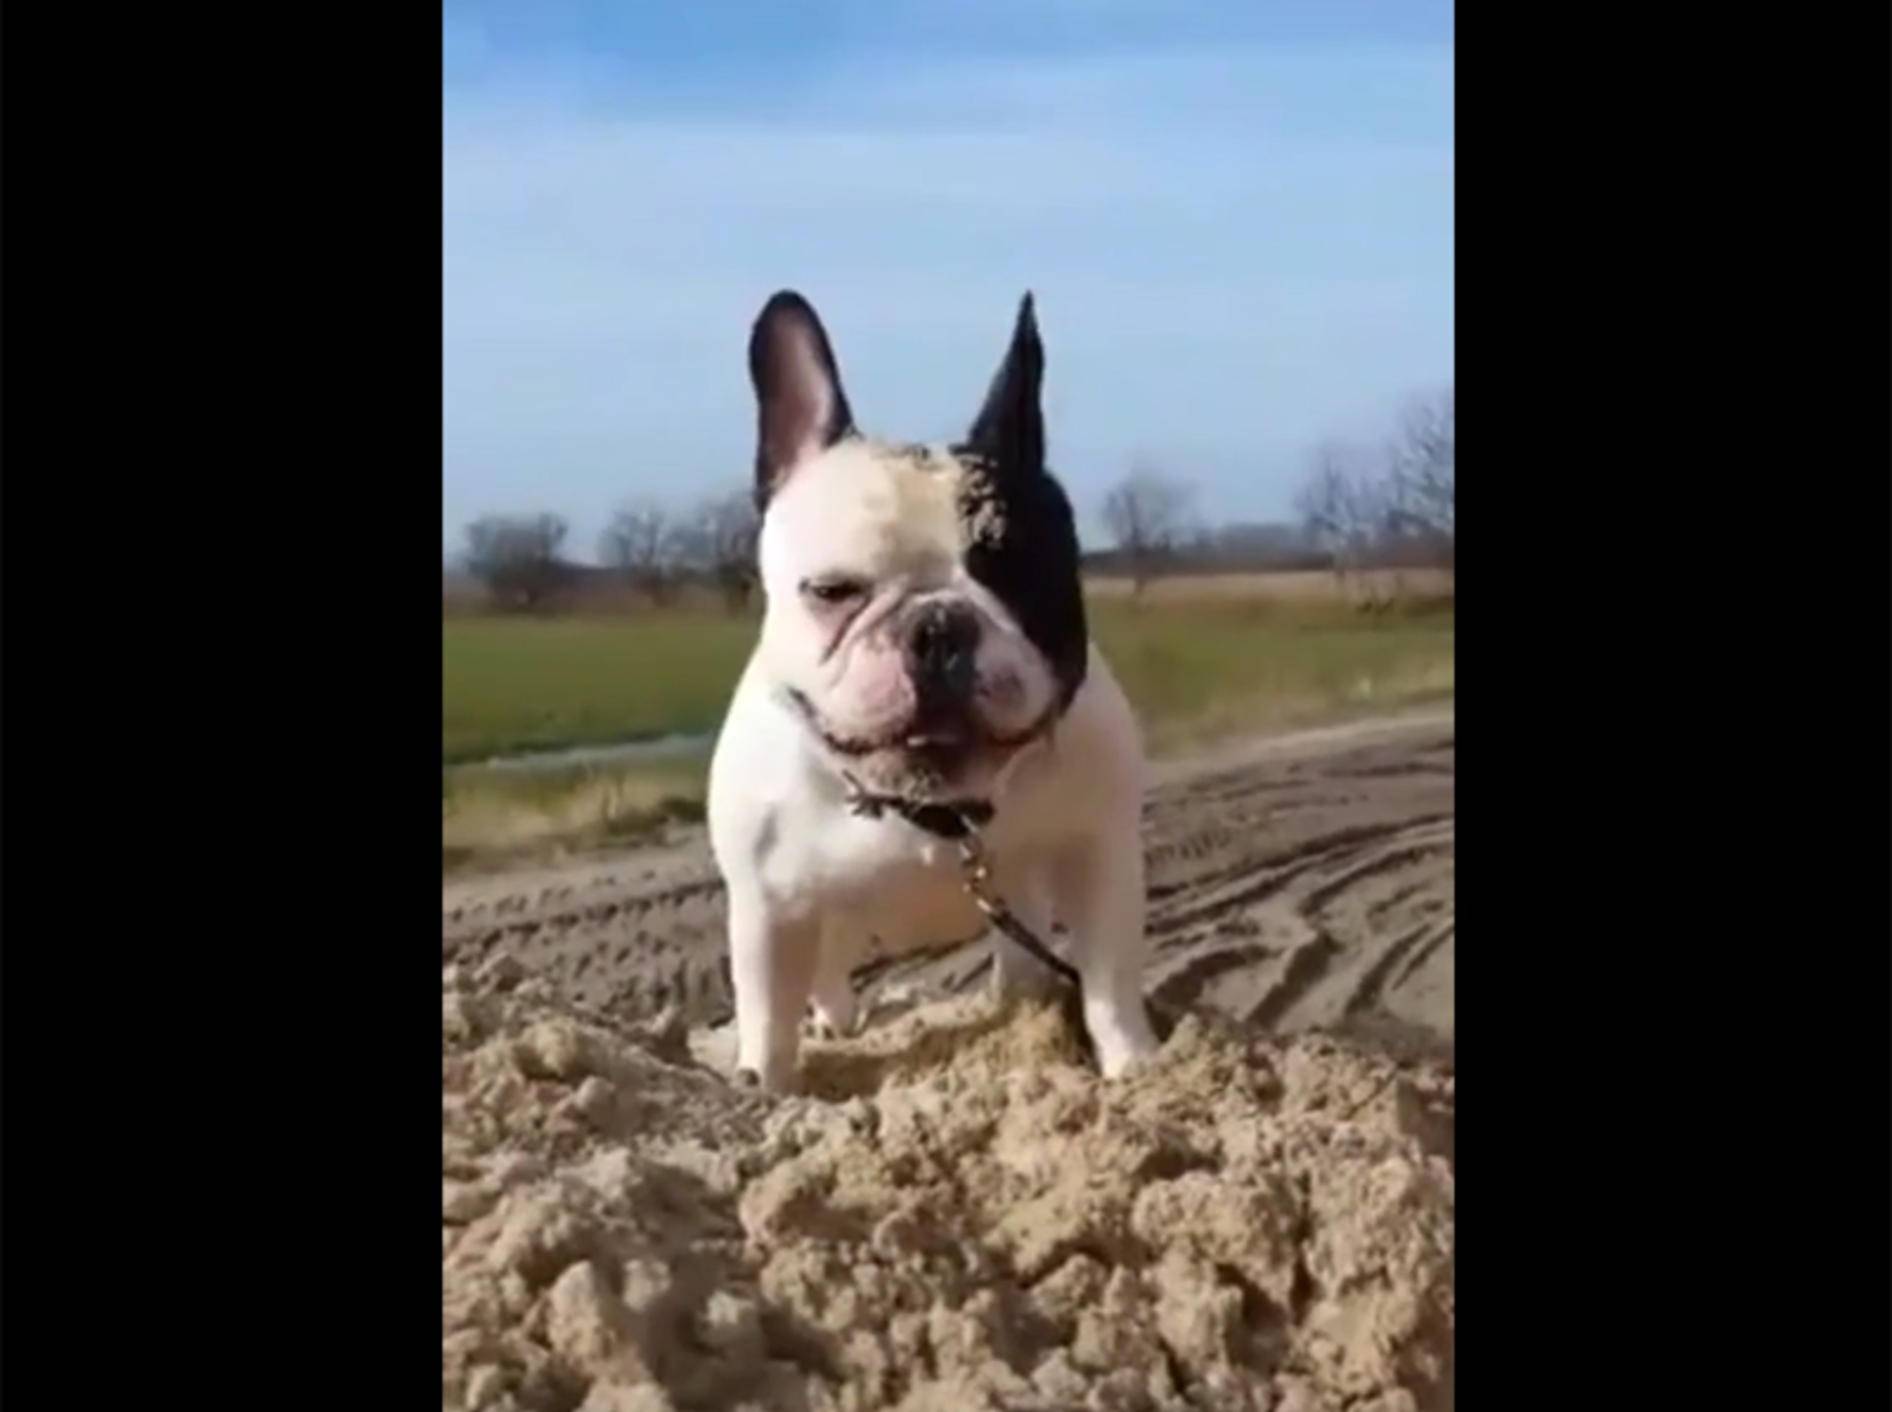 Französische Bulldogge Carlos spielt im Sandhaufen – YouTube / Rumble Viral